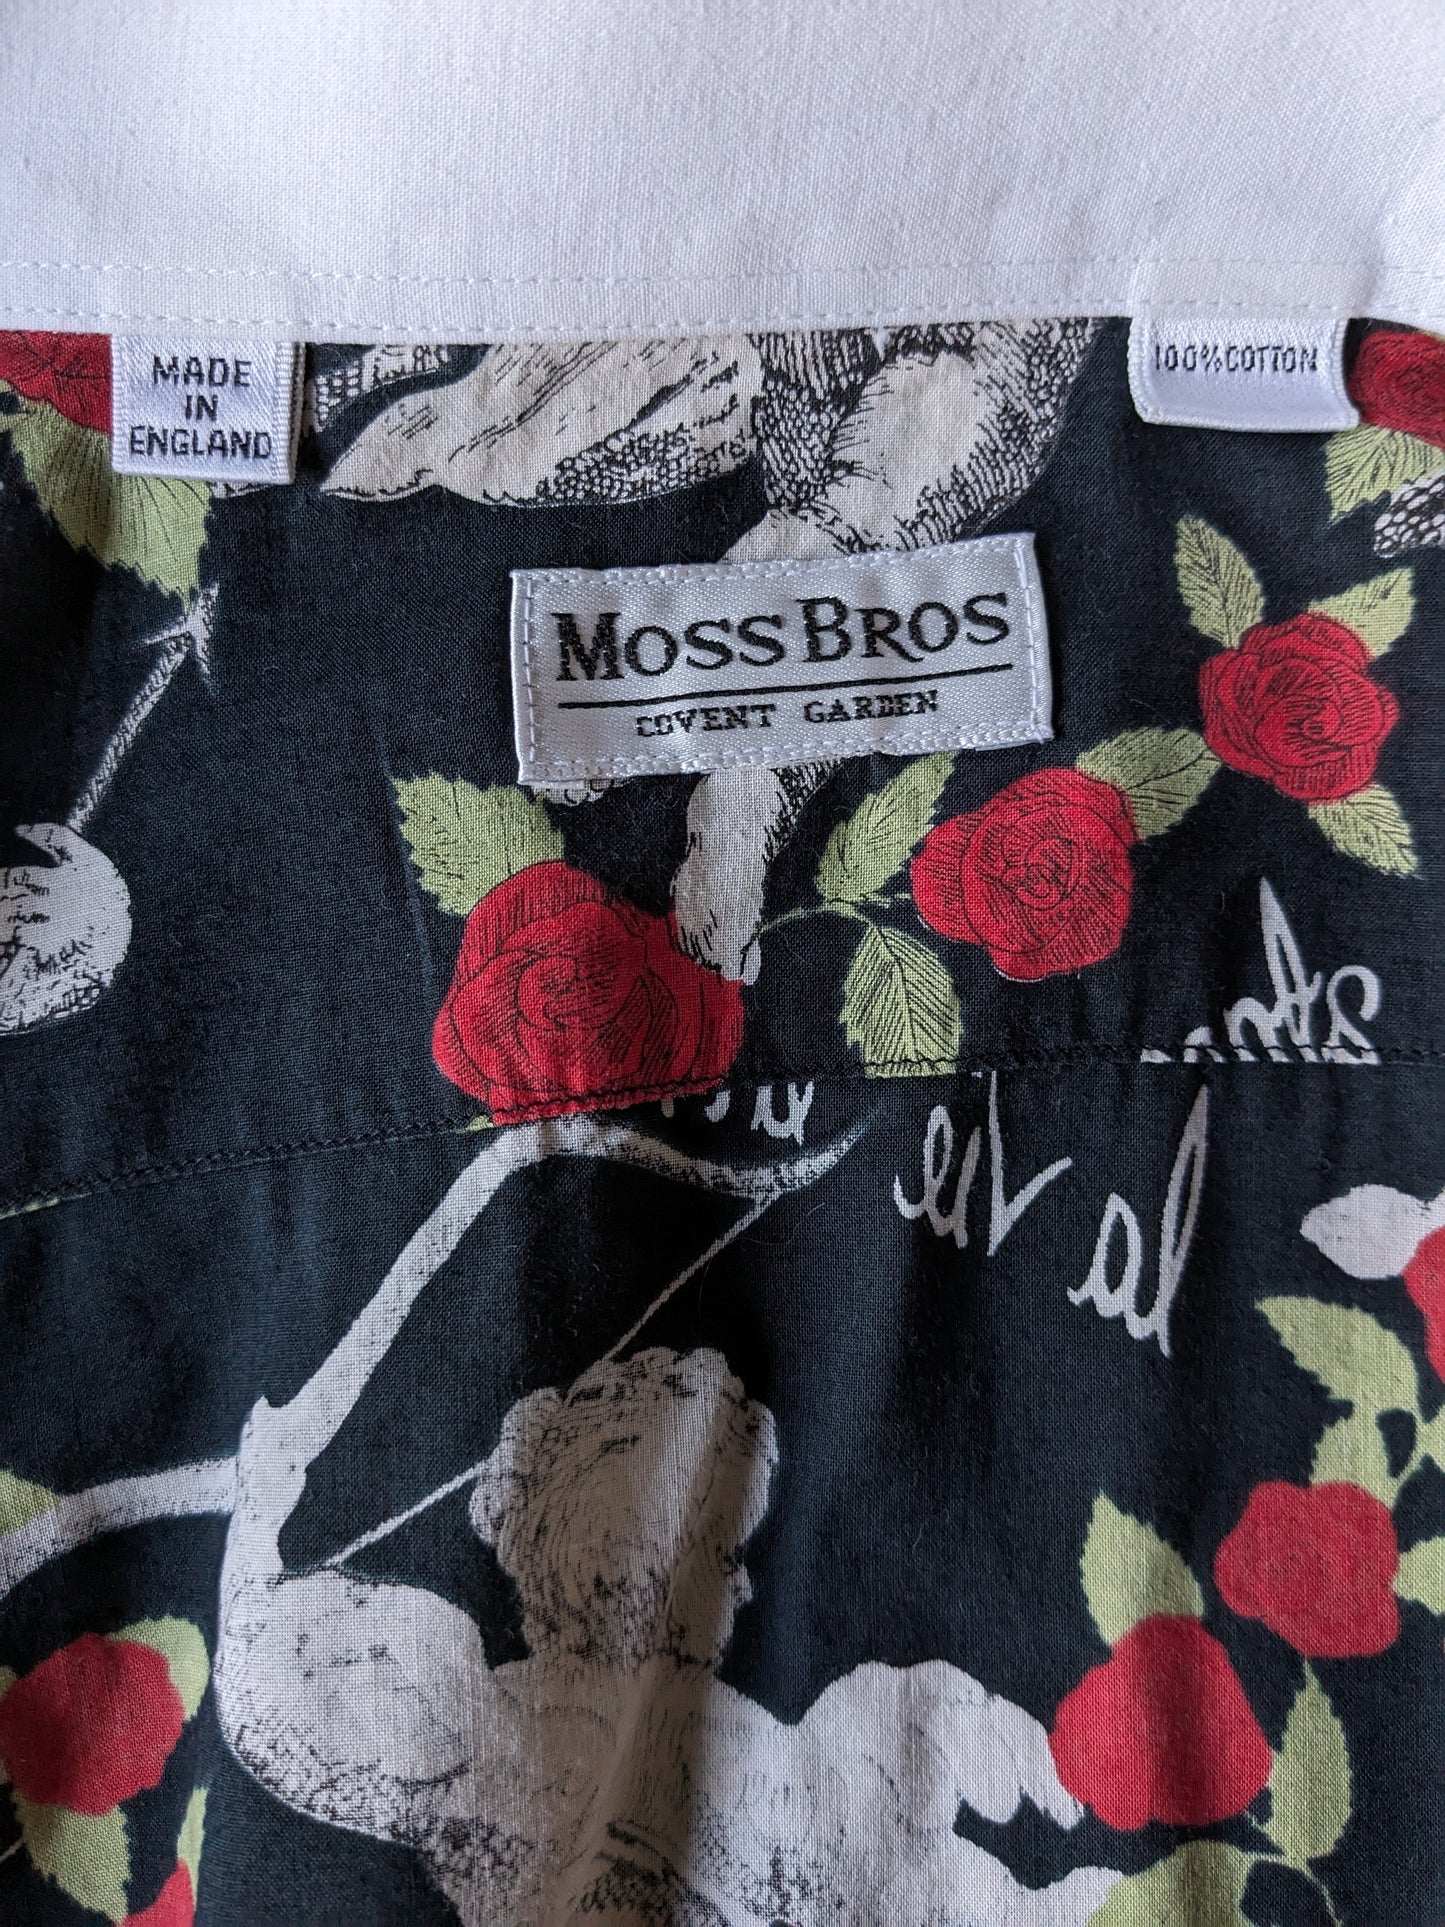 Chemise Bross Moss vintage. Rouches et manches blanches avec anges et imprimé rose. Type de nœud manchette. Taille 2xl.